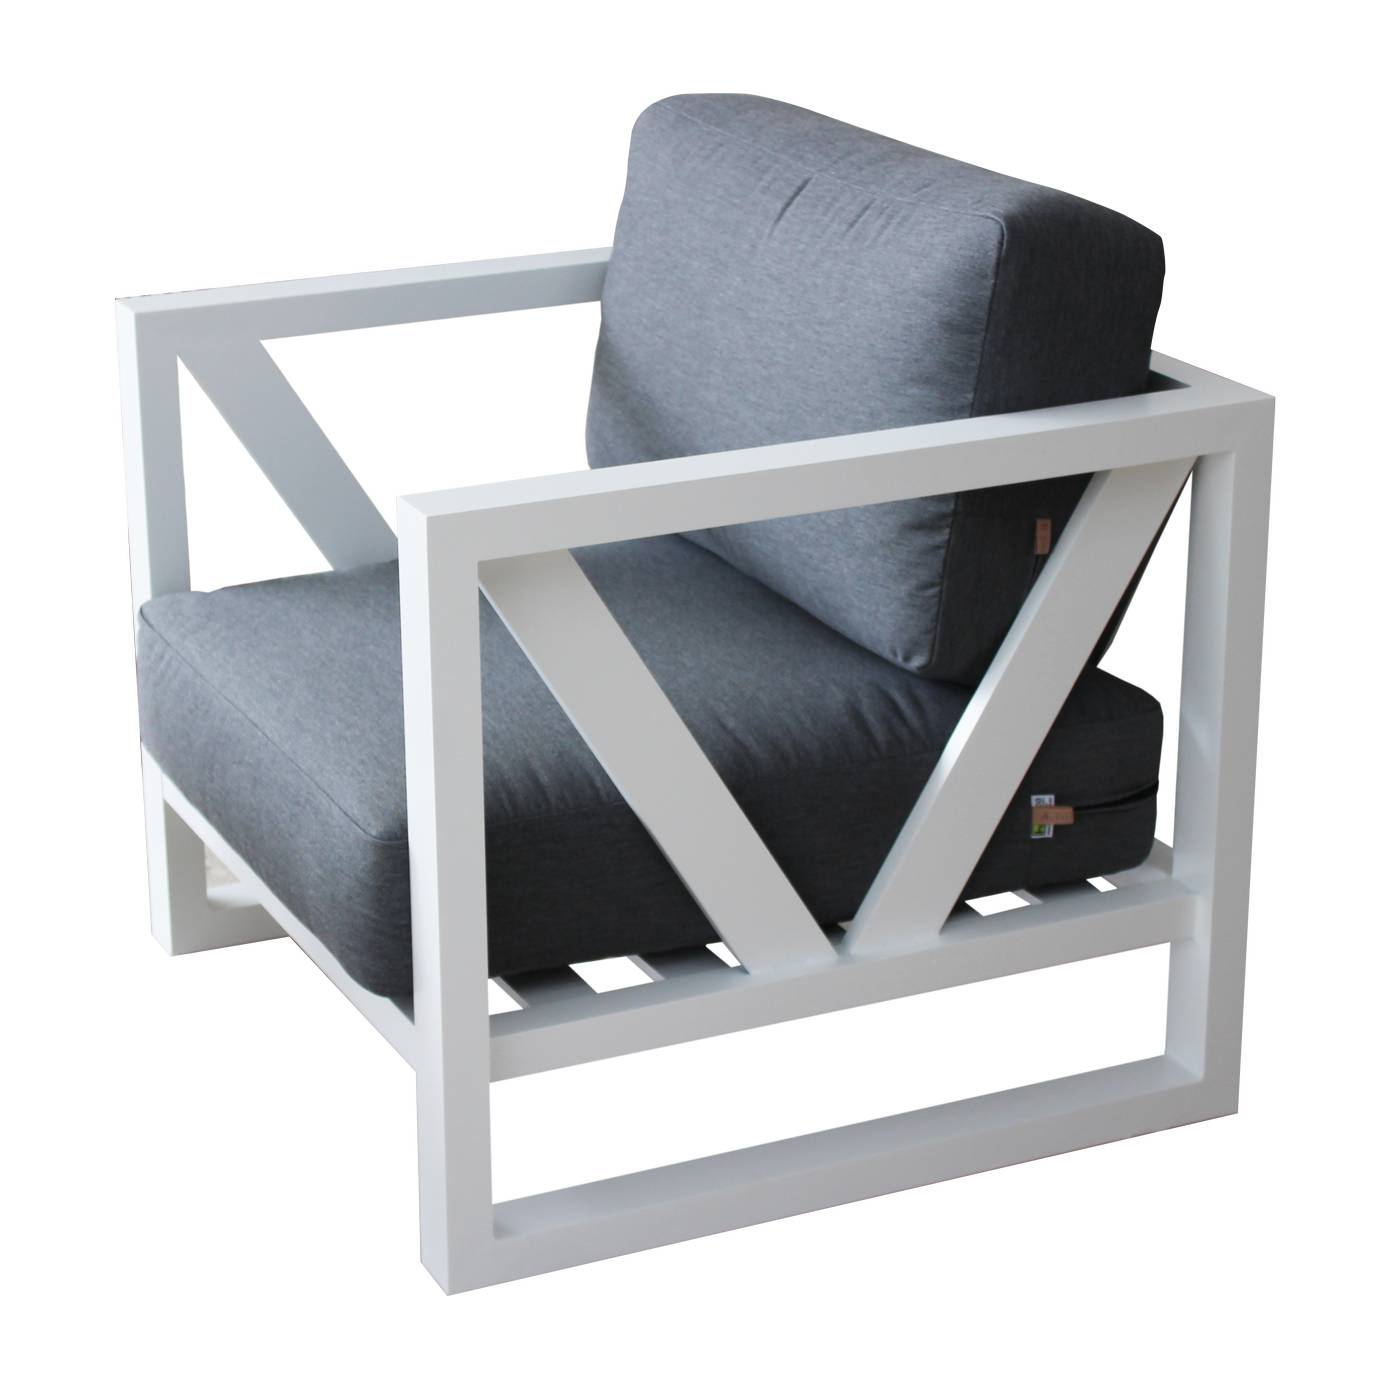 Set Aluminio Luxe Ventus-7 - Lujoso conjunto de aluminio: sofá 2 plazas + 2 sillones + mesa de centro. Color conjunto: blanco, antracita o champagne.